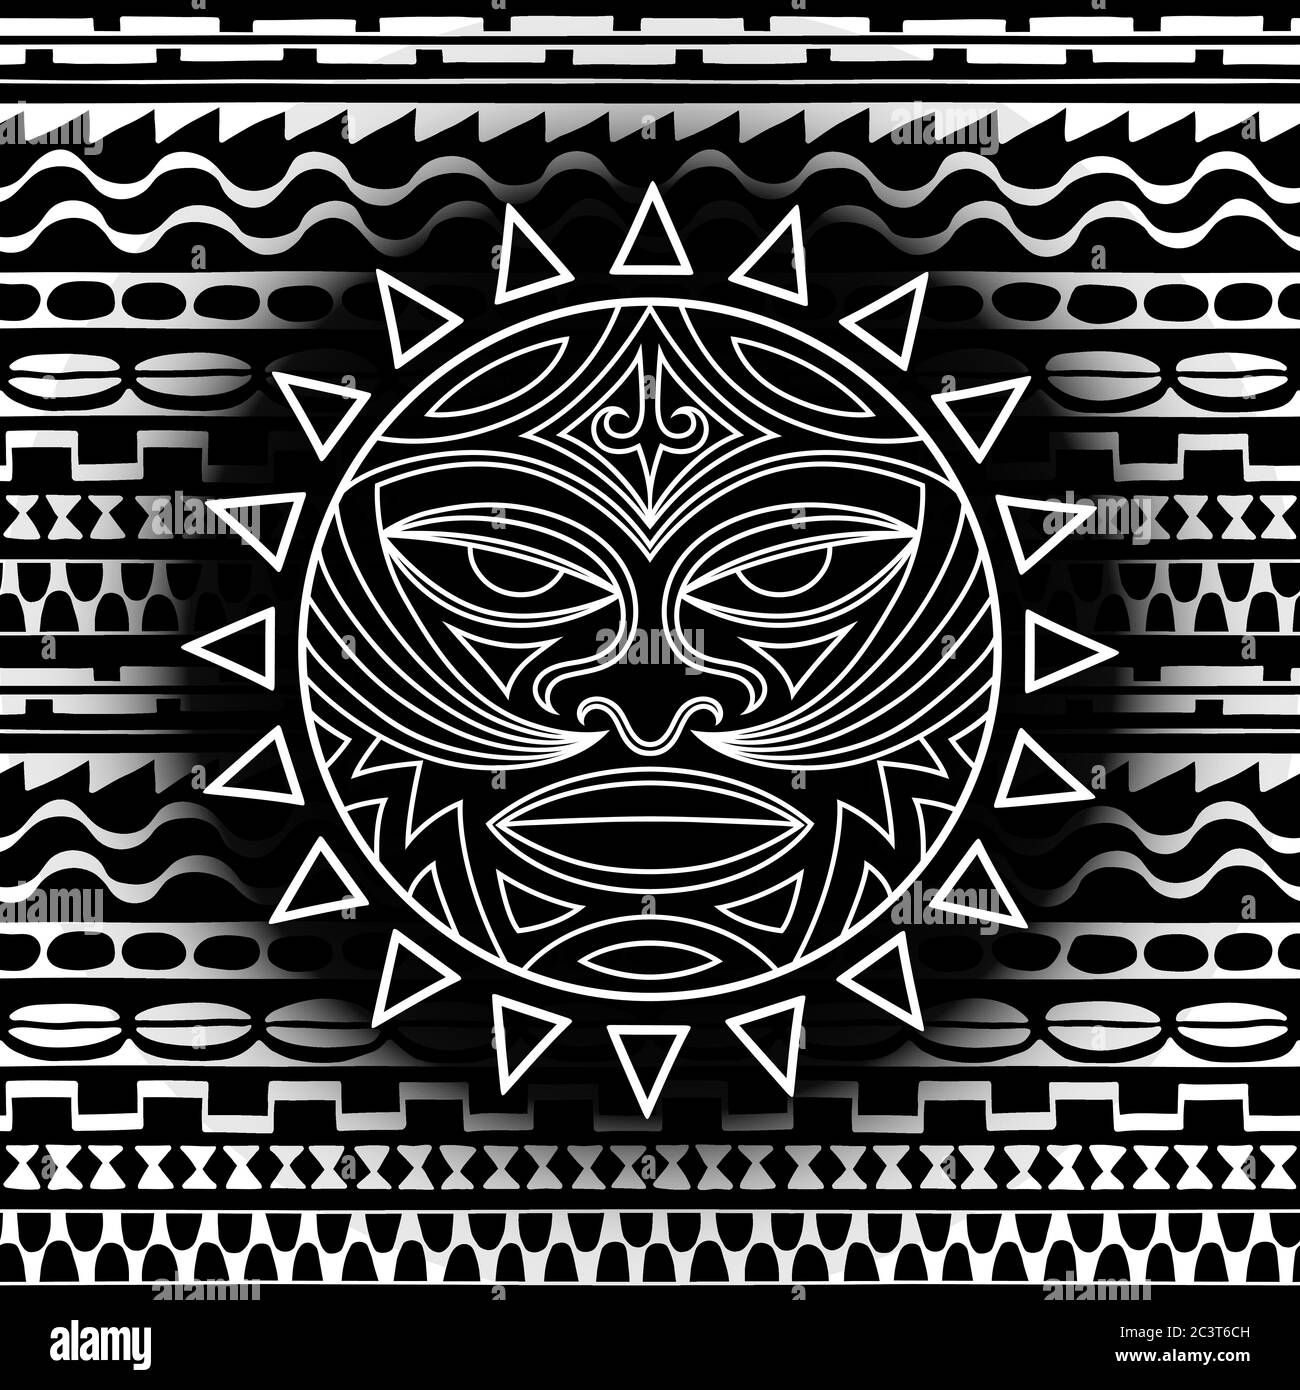 Masque de symbole ethnique du peuple maori - Tiki sur le modèle sans couture. Le tonnerre est le symbole de Dieu. Signe tribal Sacrad dans le style polenésien pour appli Illustration de Vecteur